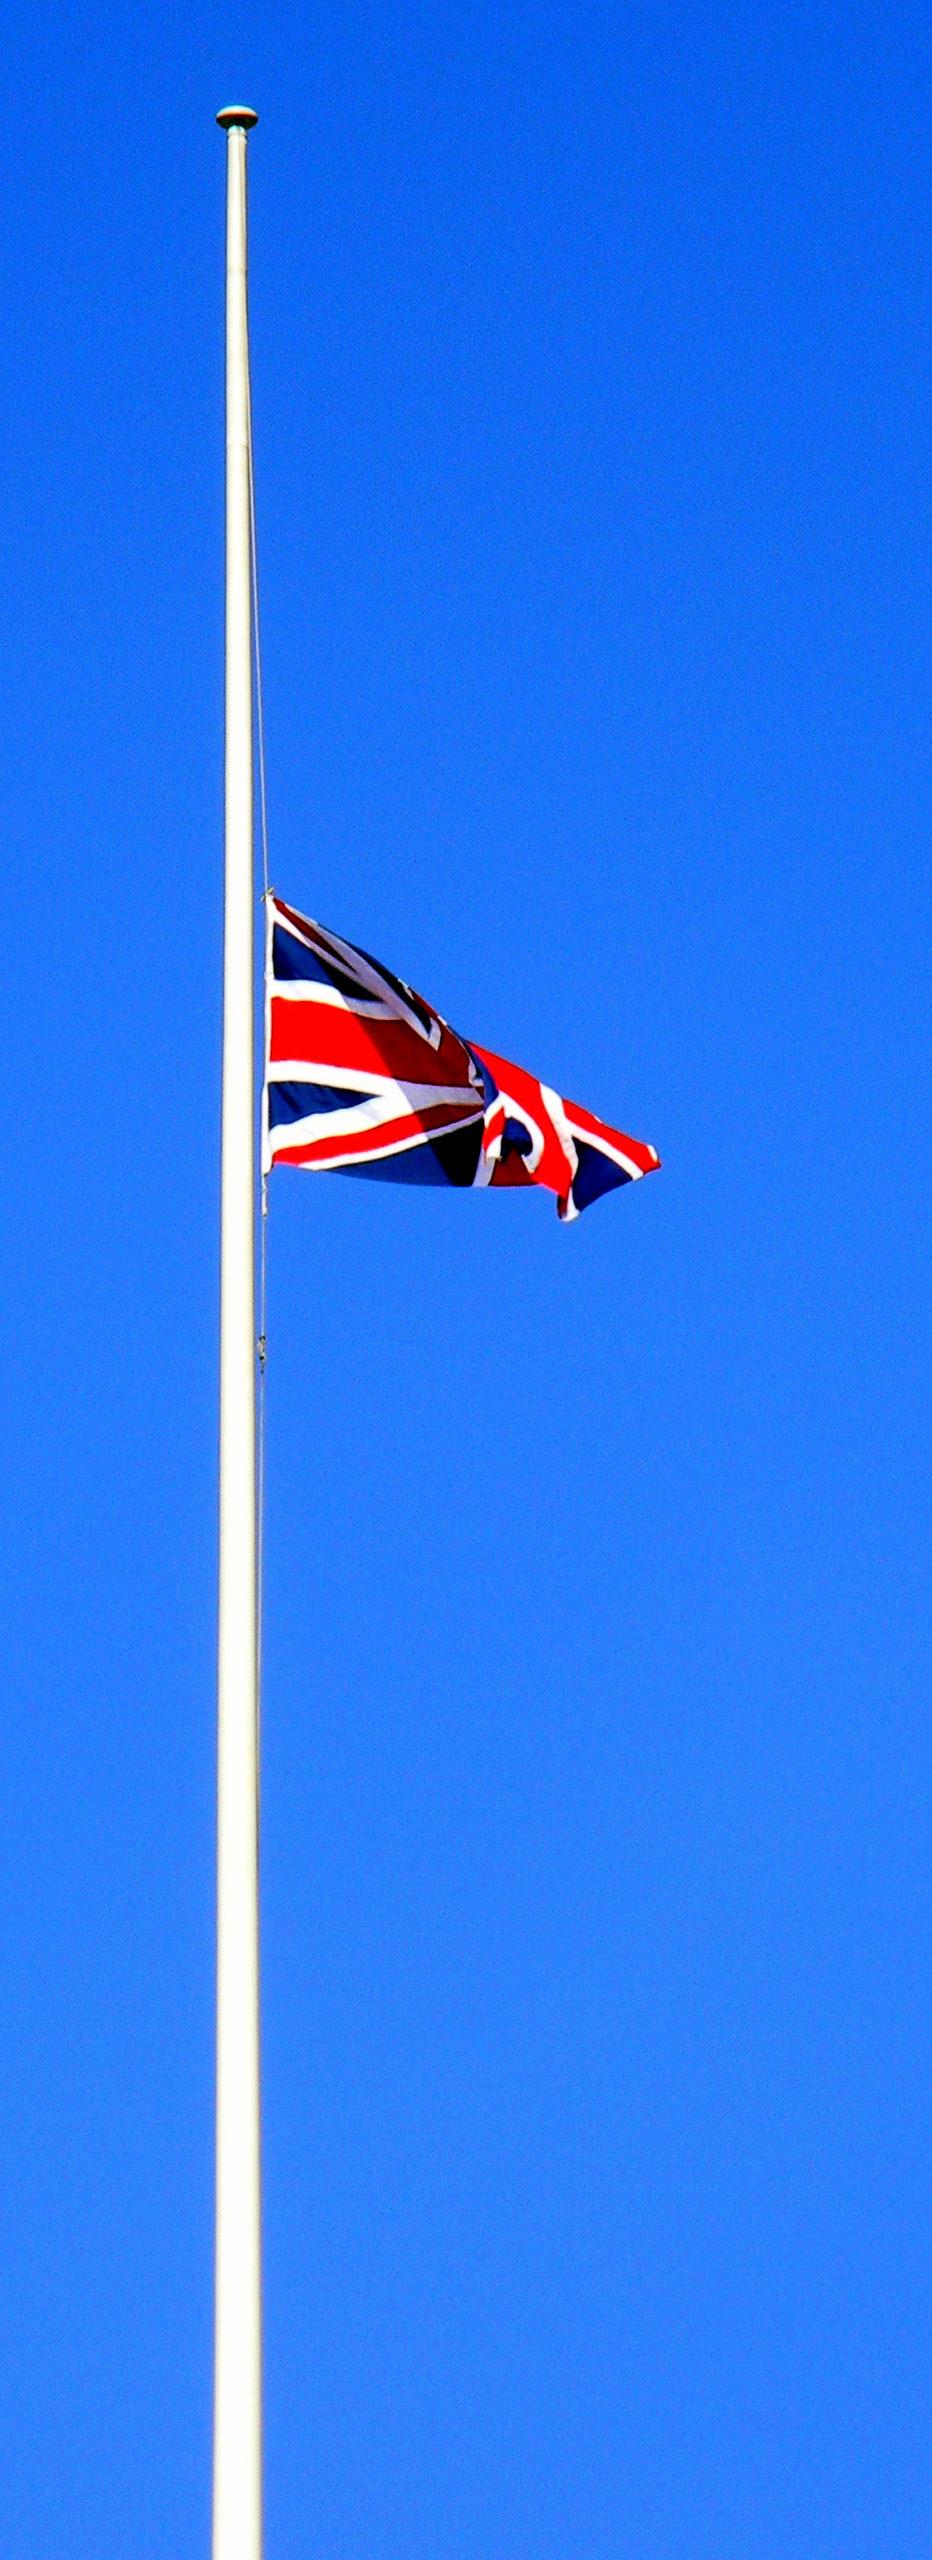 Union Jack flag half mast